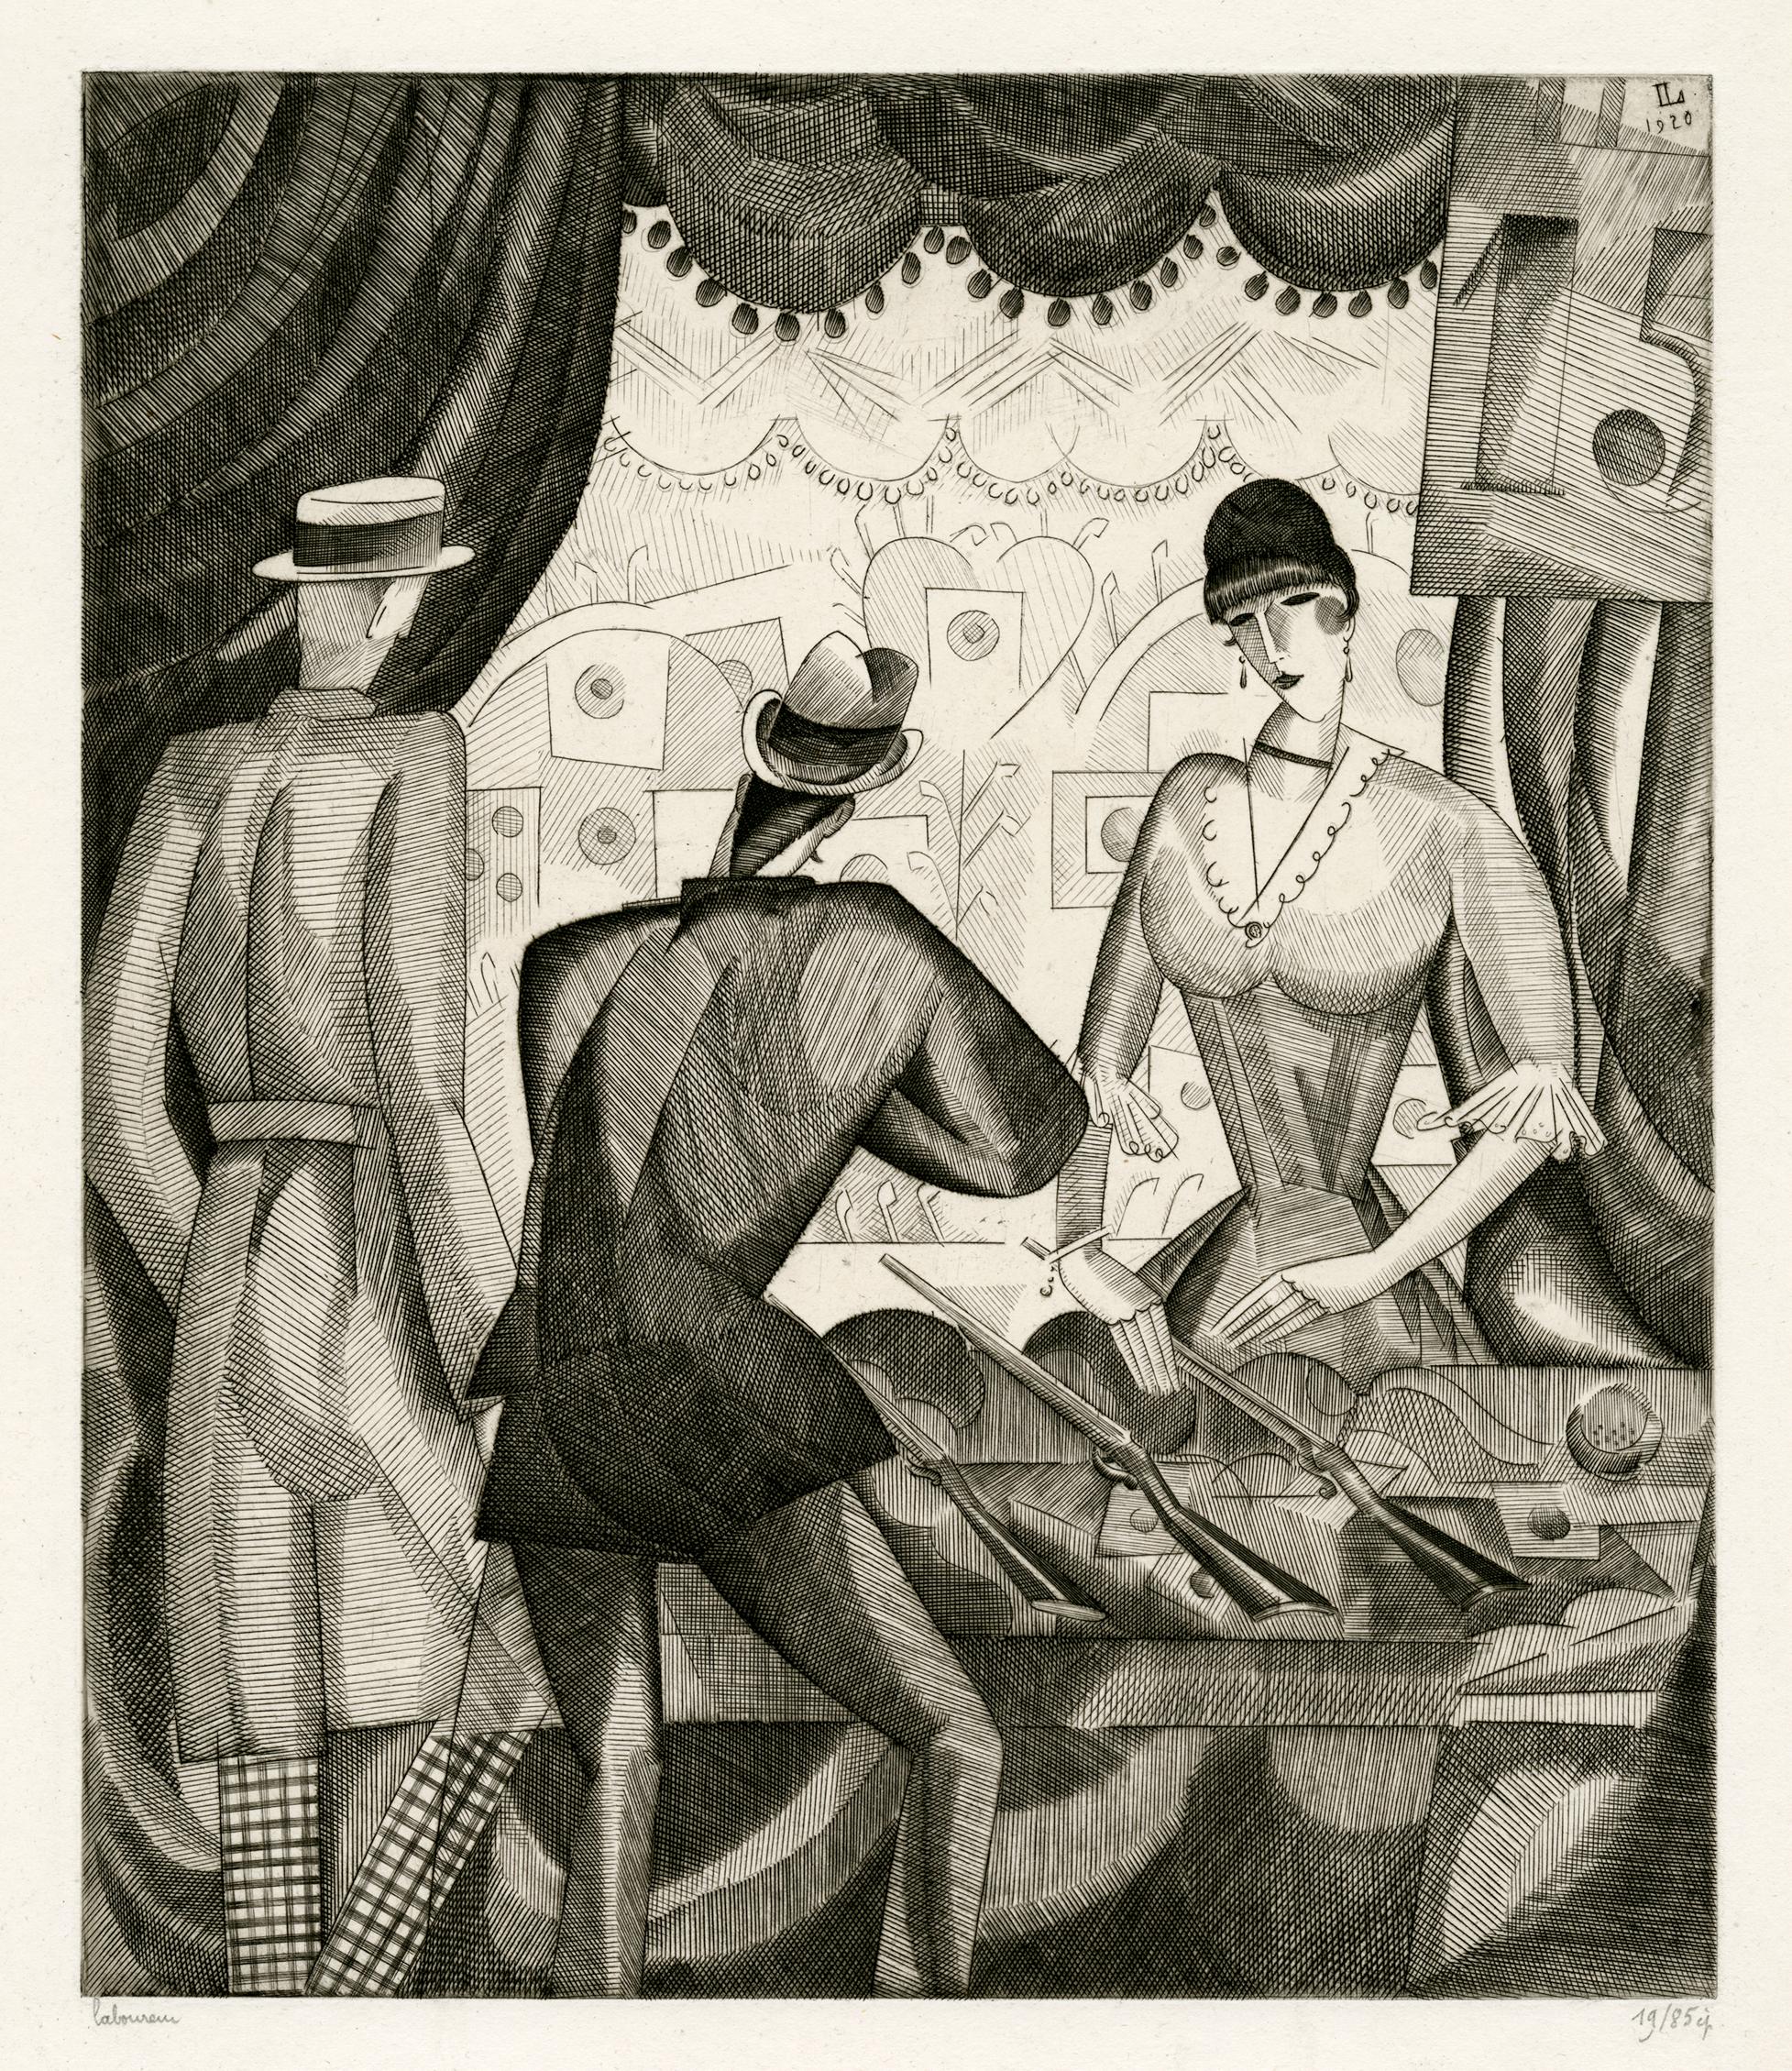 Jean-Emile Laboureur Figurative Print - 'Le Tir Forain' (Fairground Shooting) — 1920s French Cubism